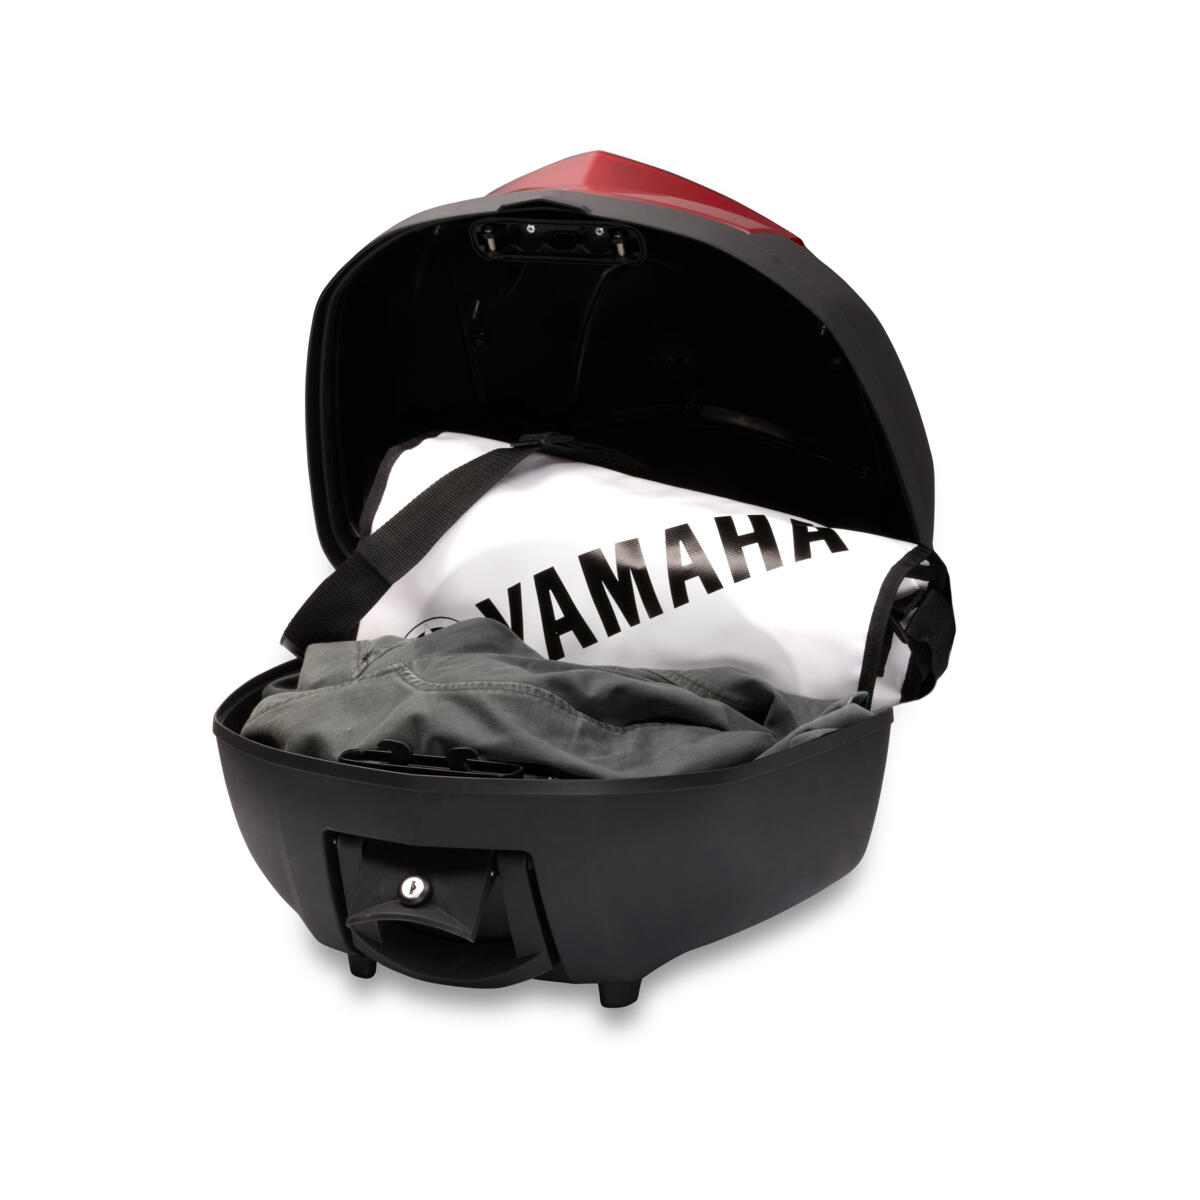 Top Case para añadir capacidad de almacenamiento adicional a tu Yamaha.